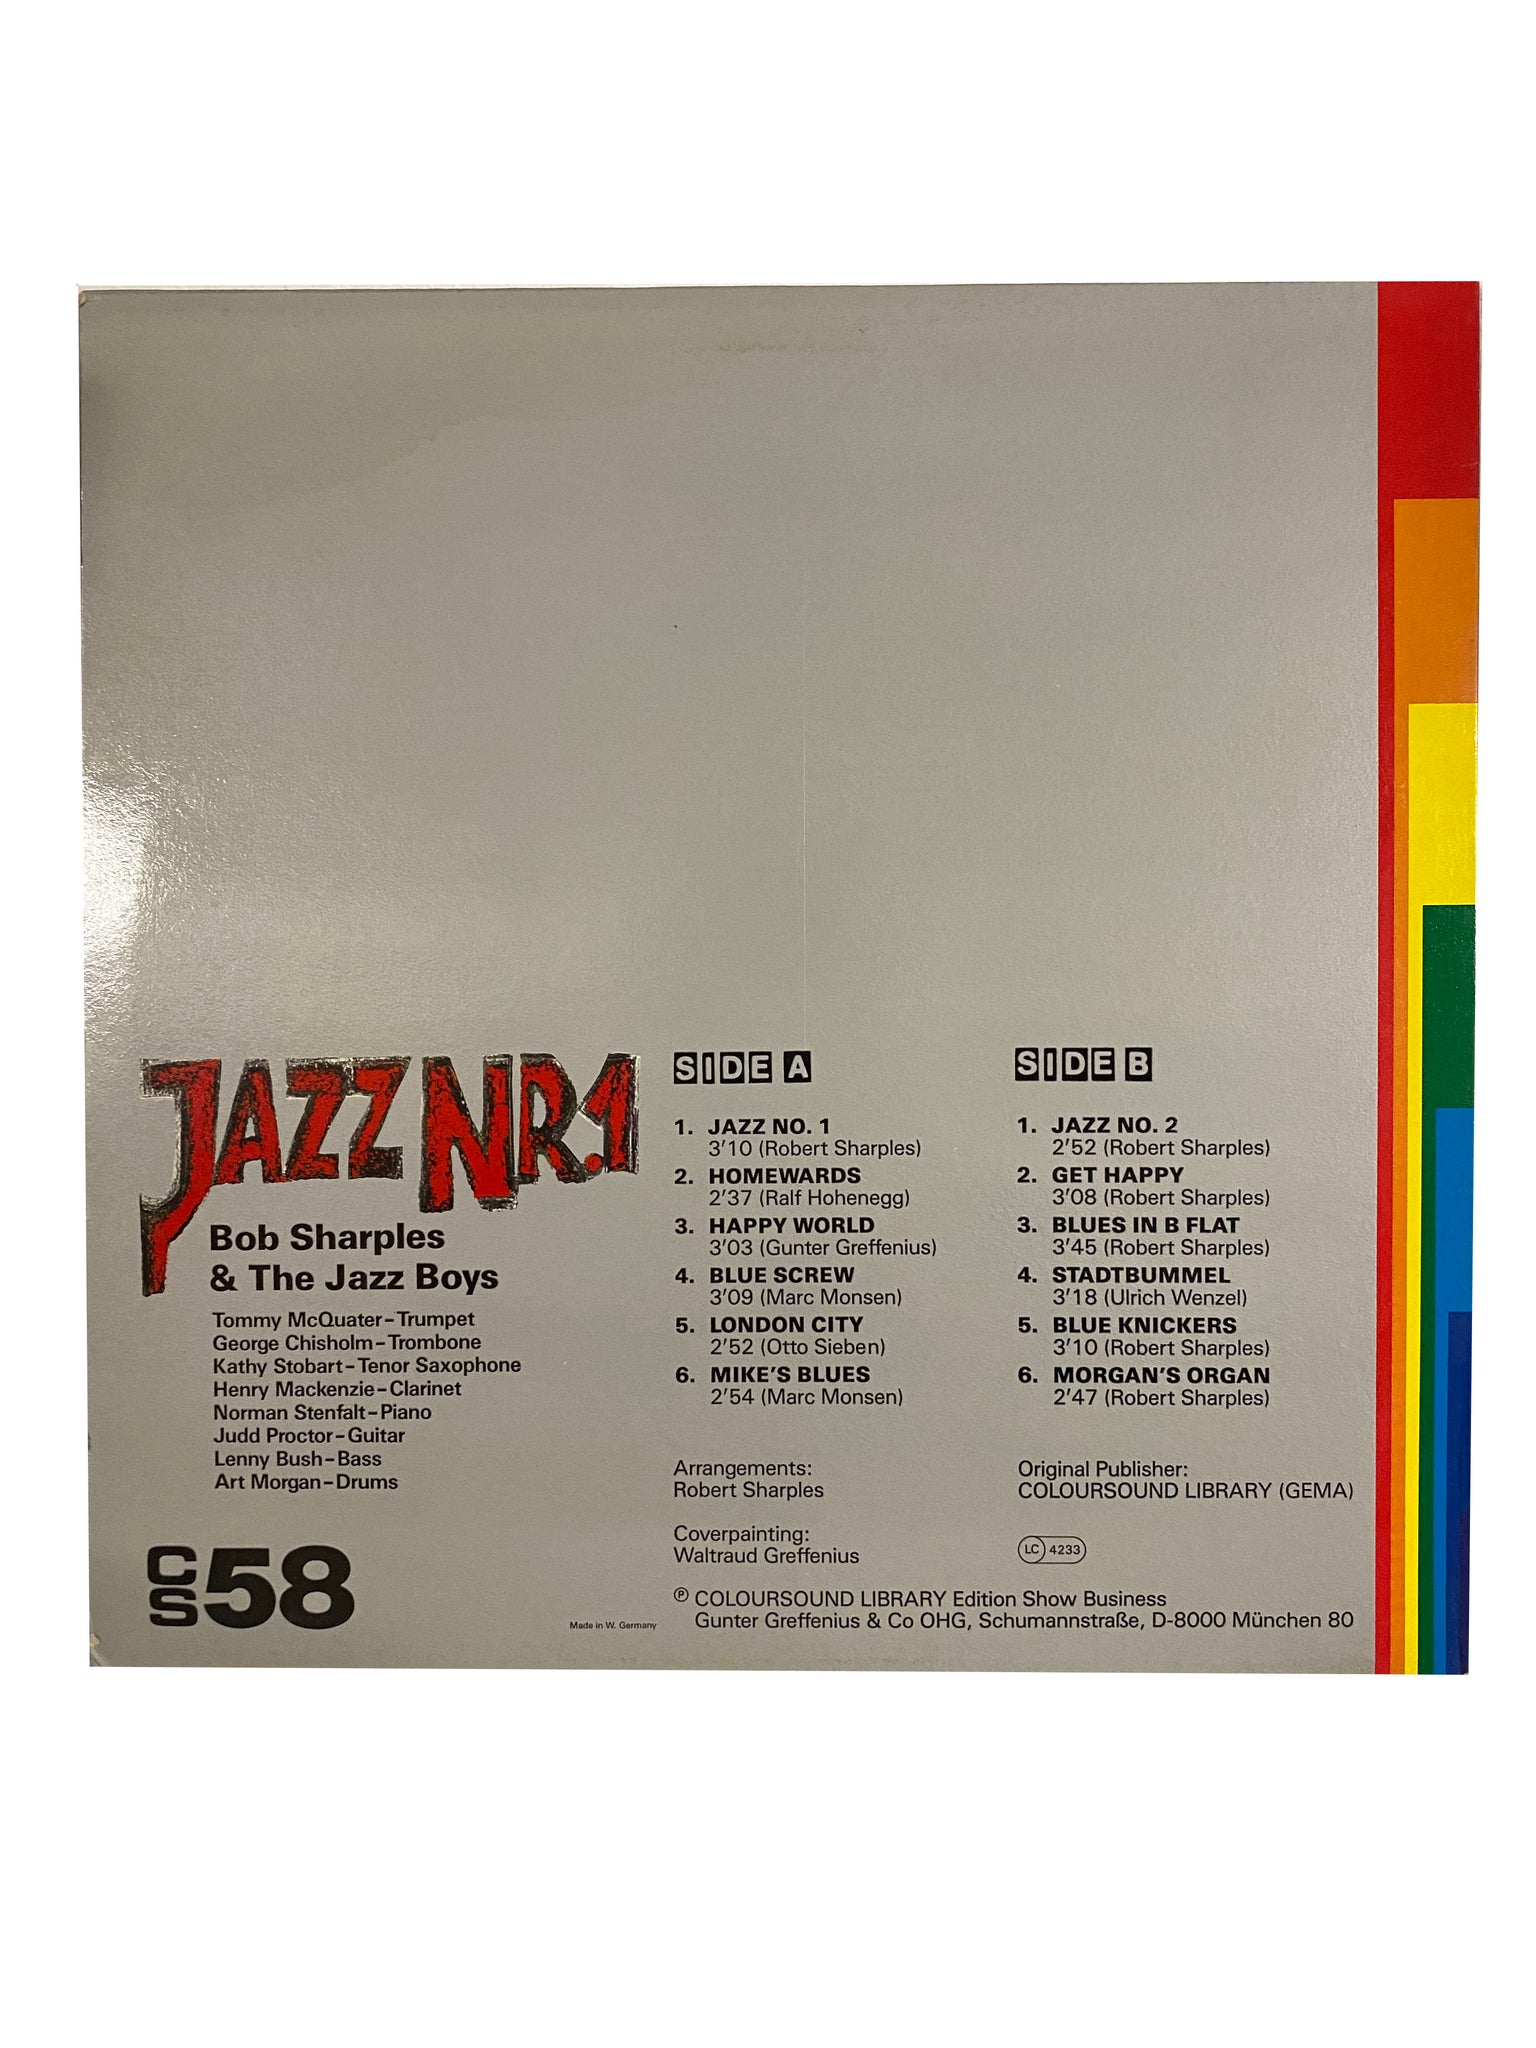 Jazz Nr.1(LP), by Bob Sharples & The Jazz Boys